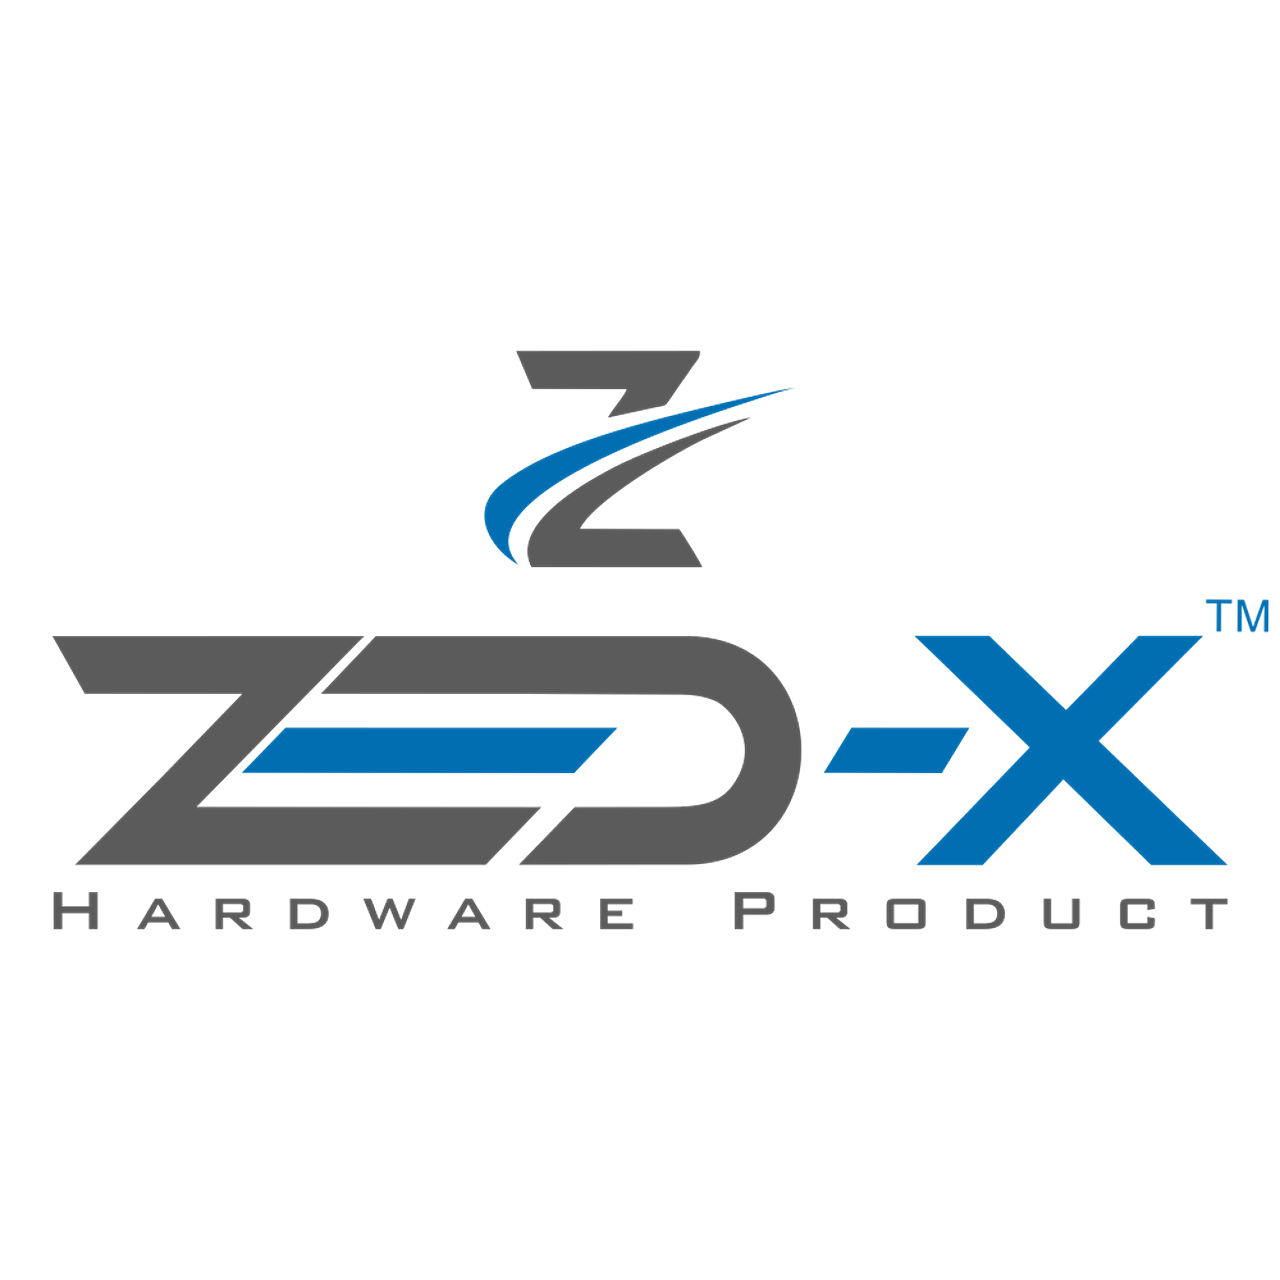 STALL 5A - ZEDX